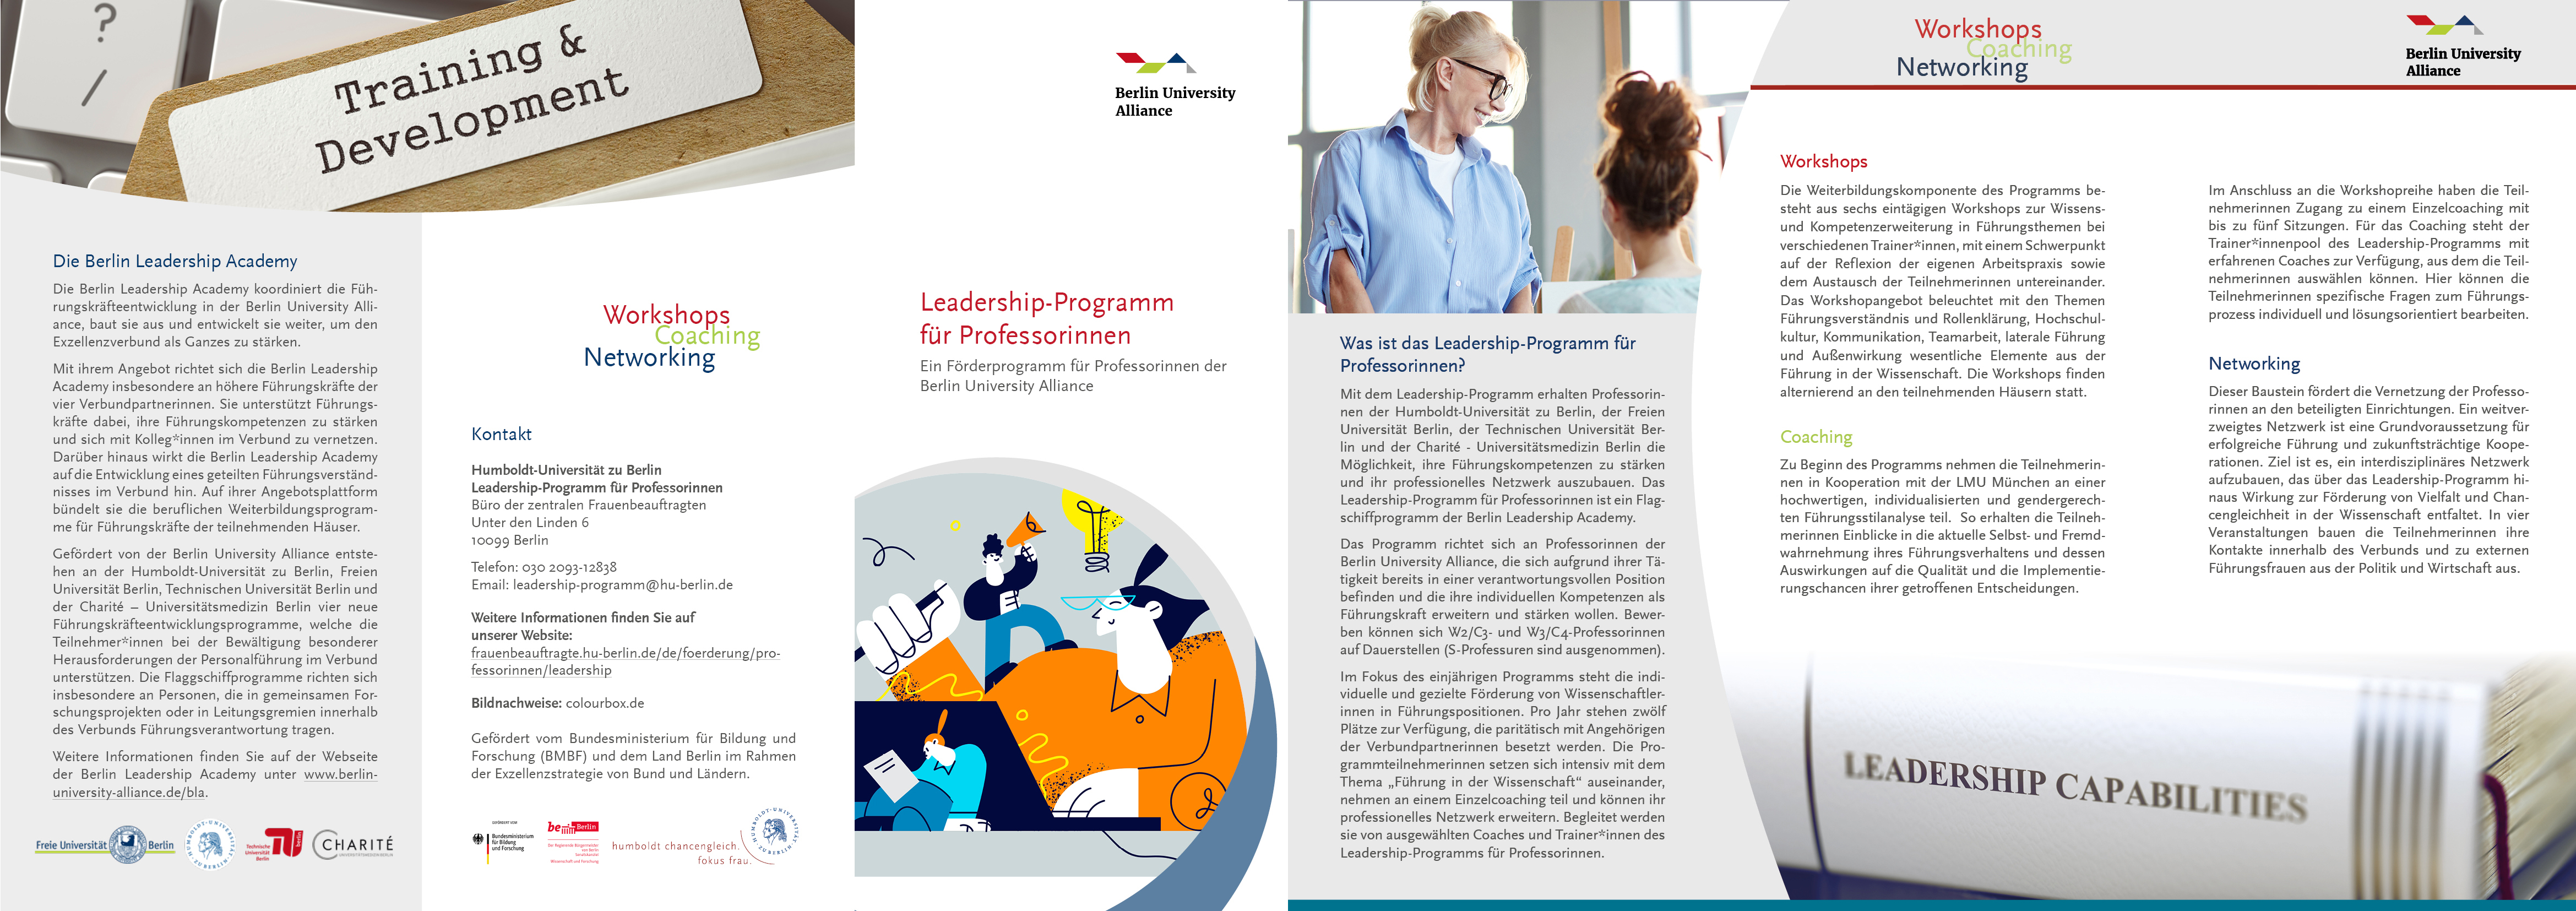 Flyer Leadership-Programm_jpg